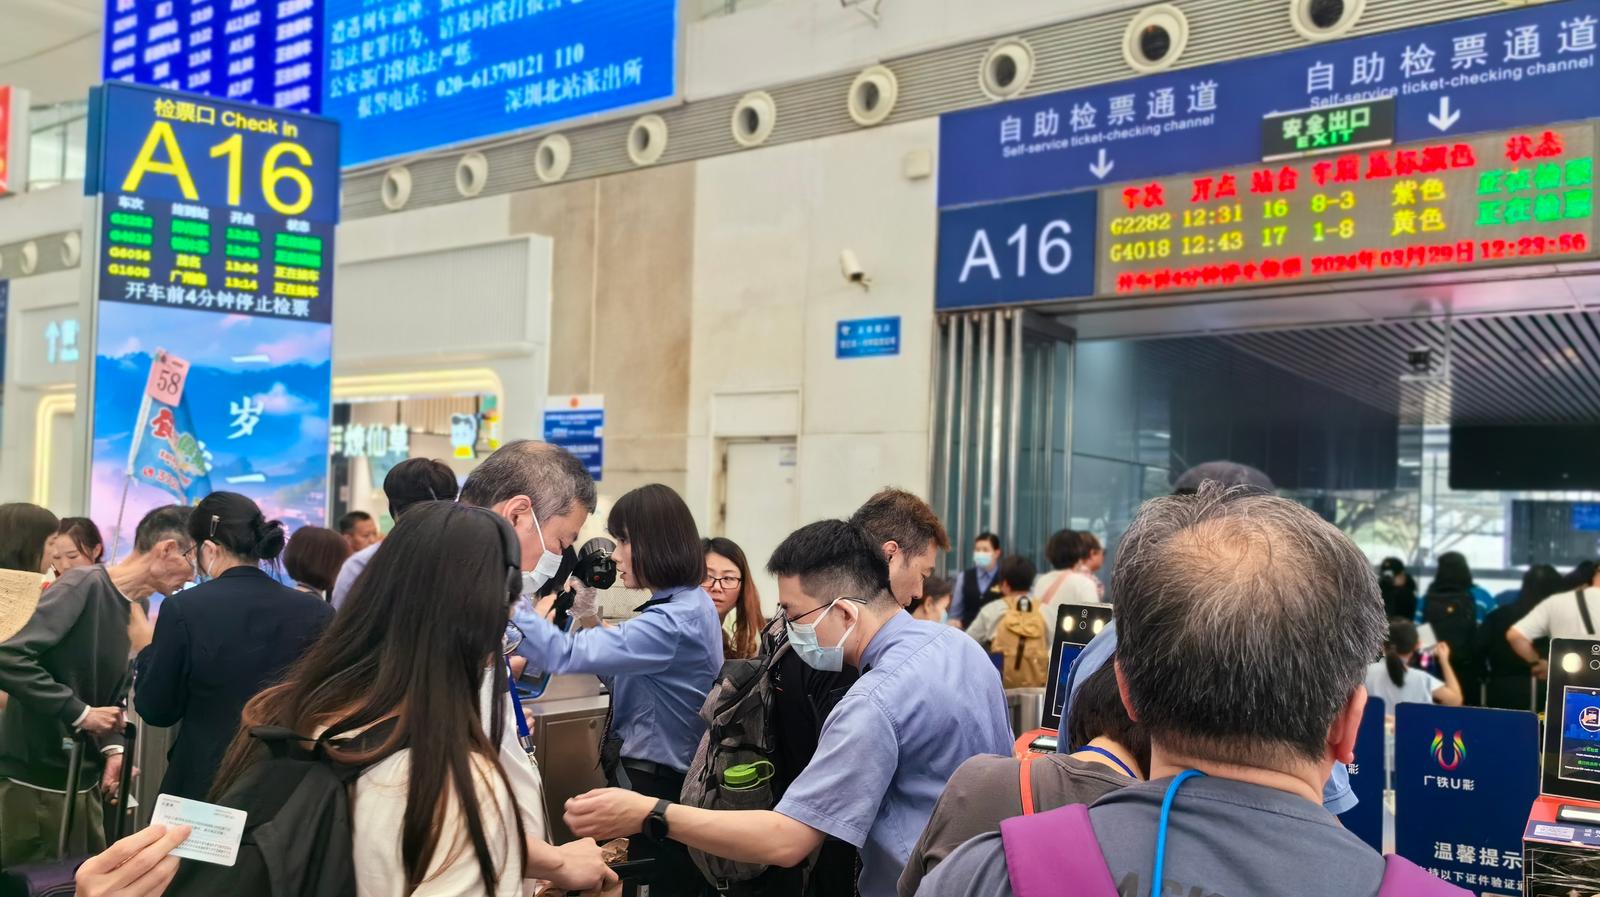 深圳铁路开行深圳-桂林旅游专列 上千名香港居民搭乘高铁出游